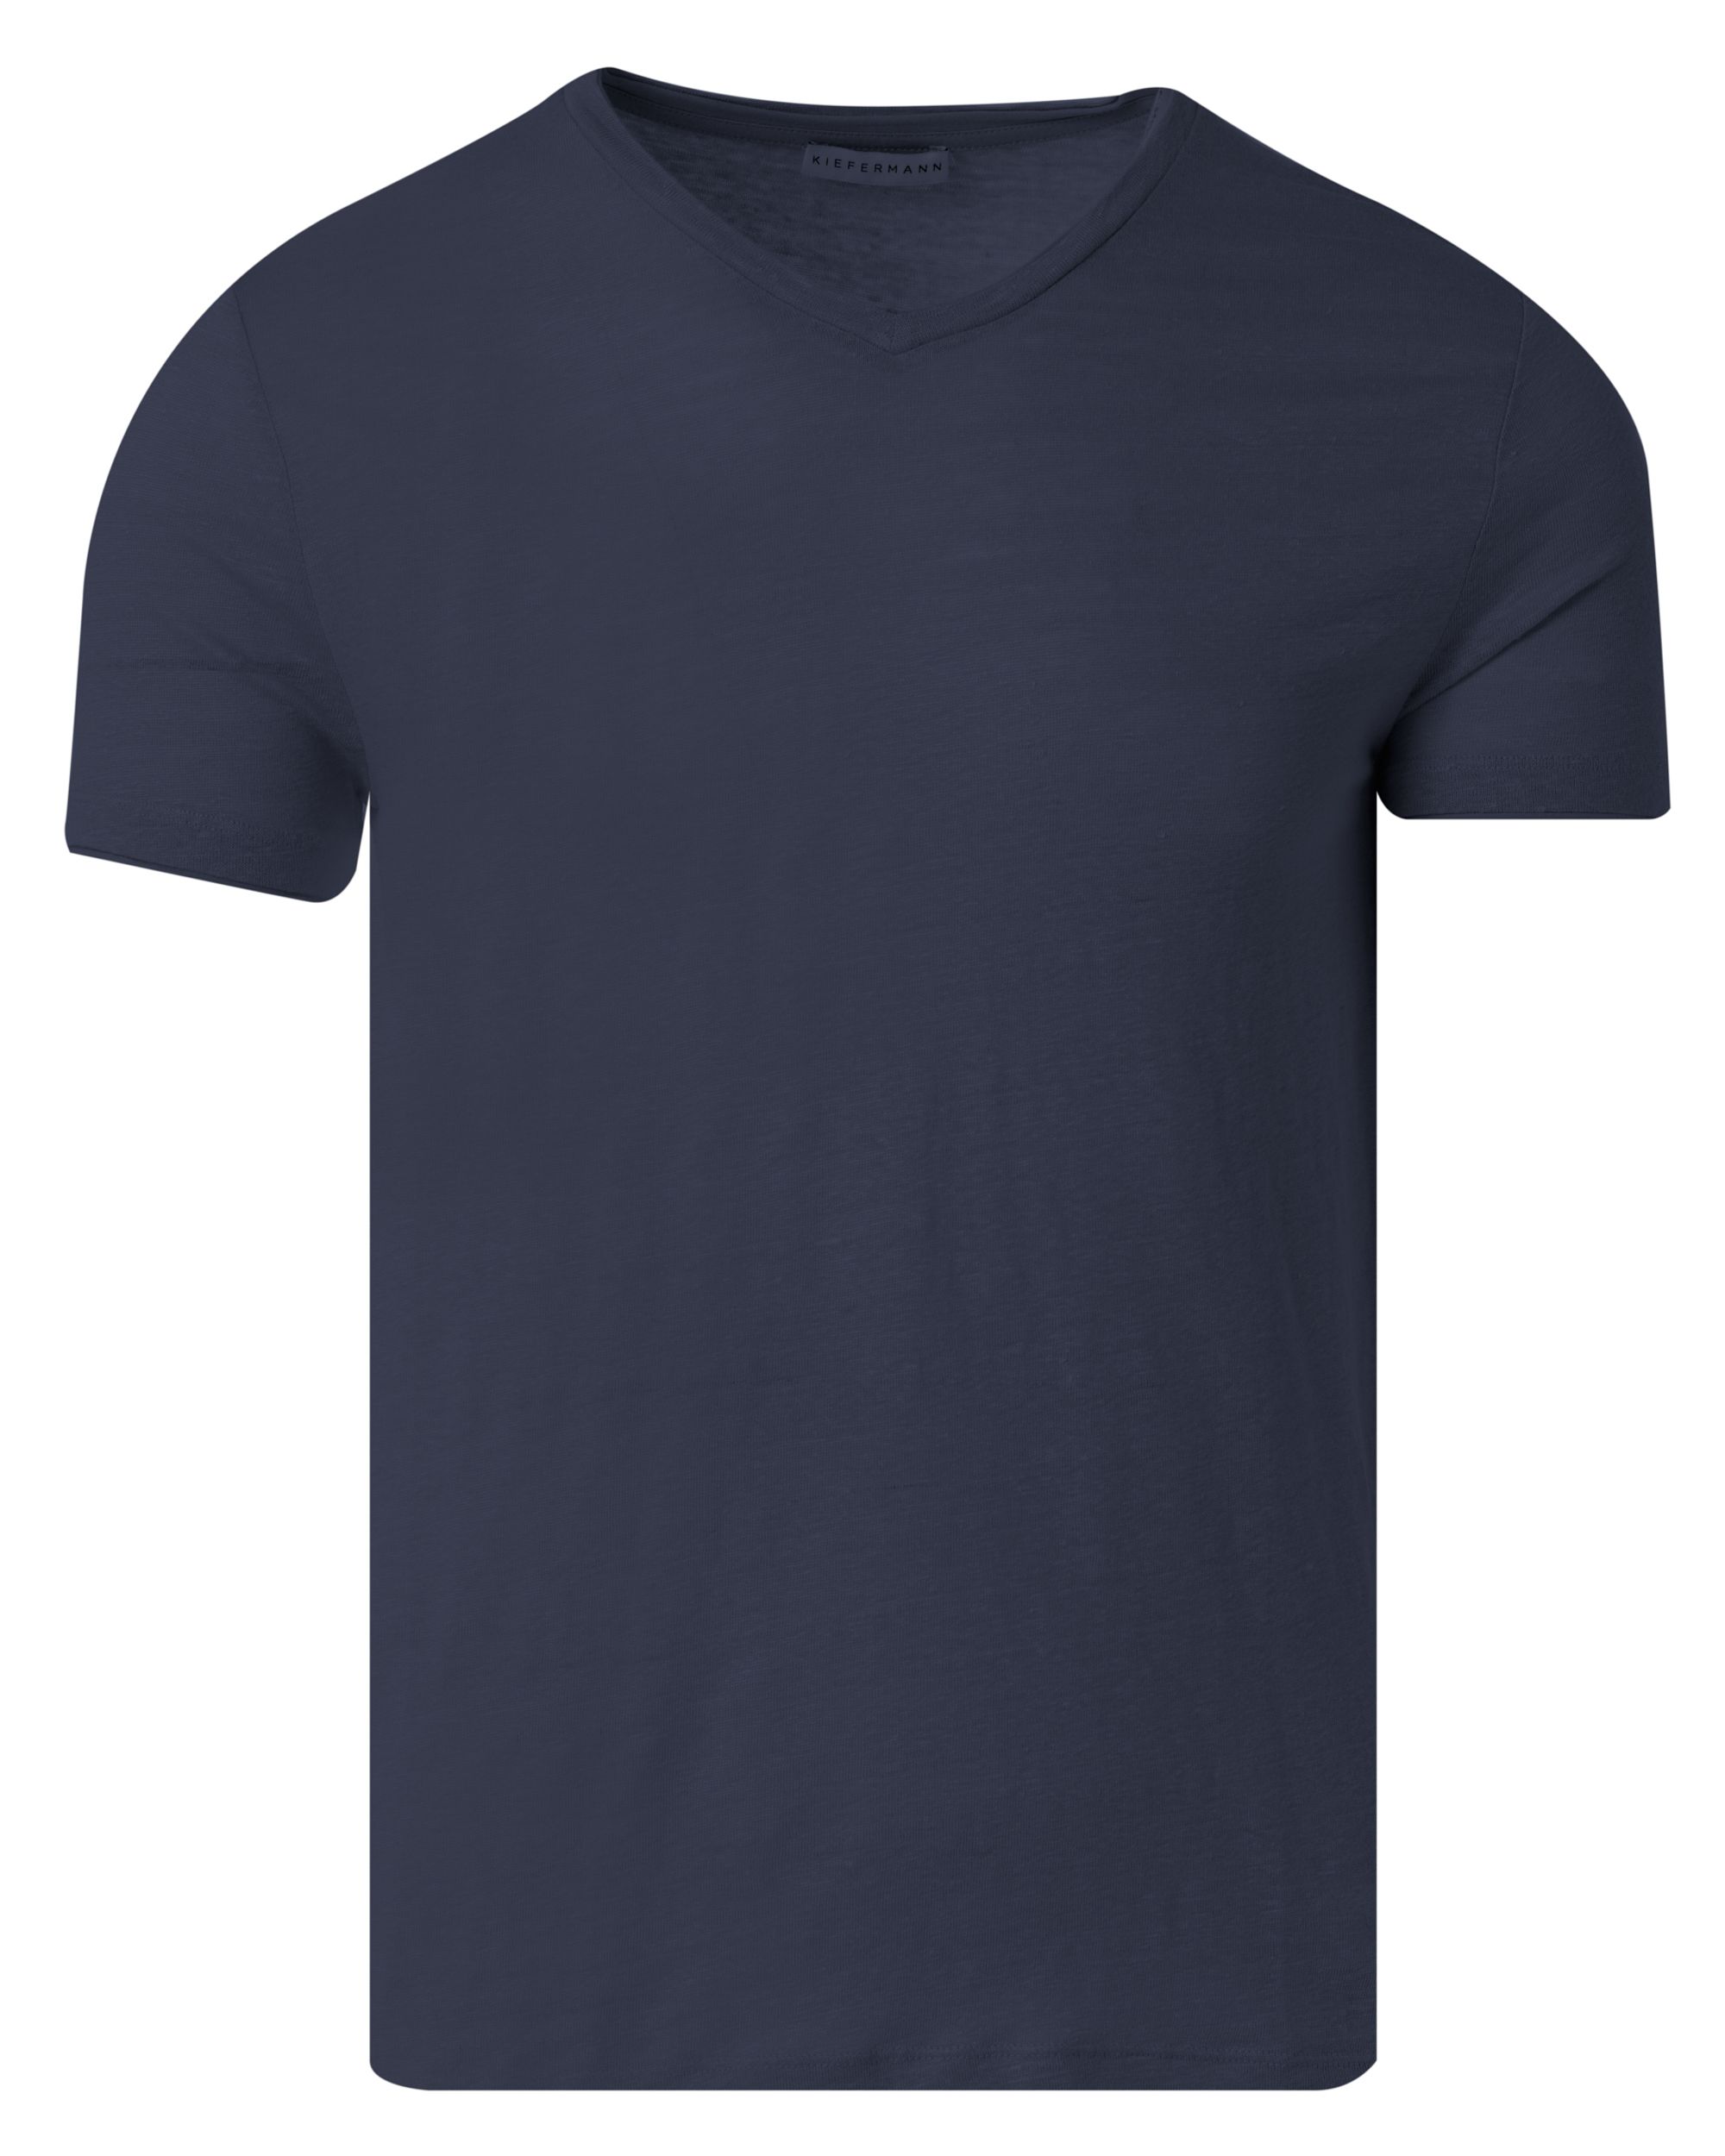 Kiefermann T-shirt KM Donker blauw 083557-001-L